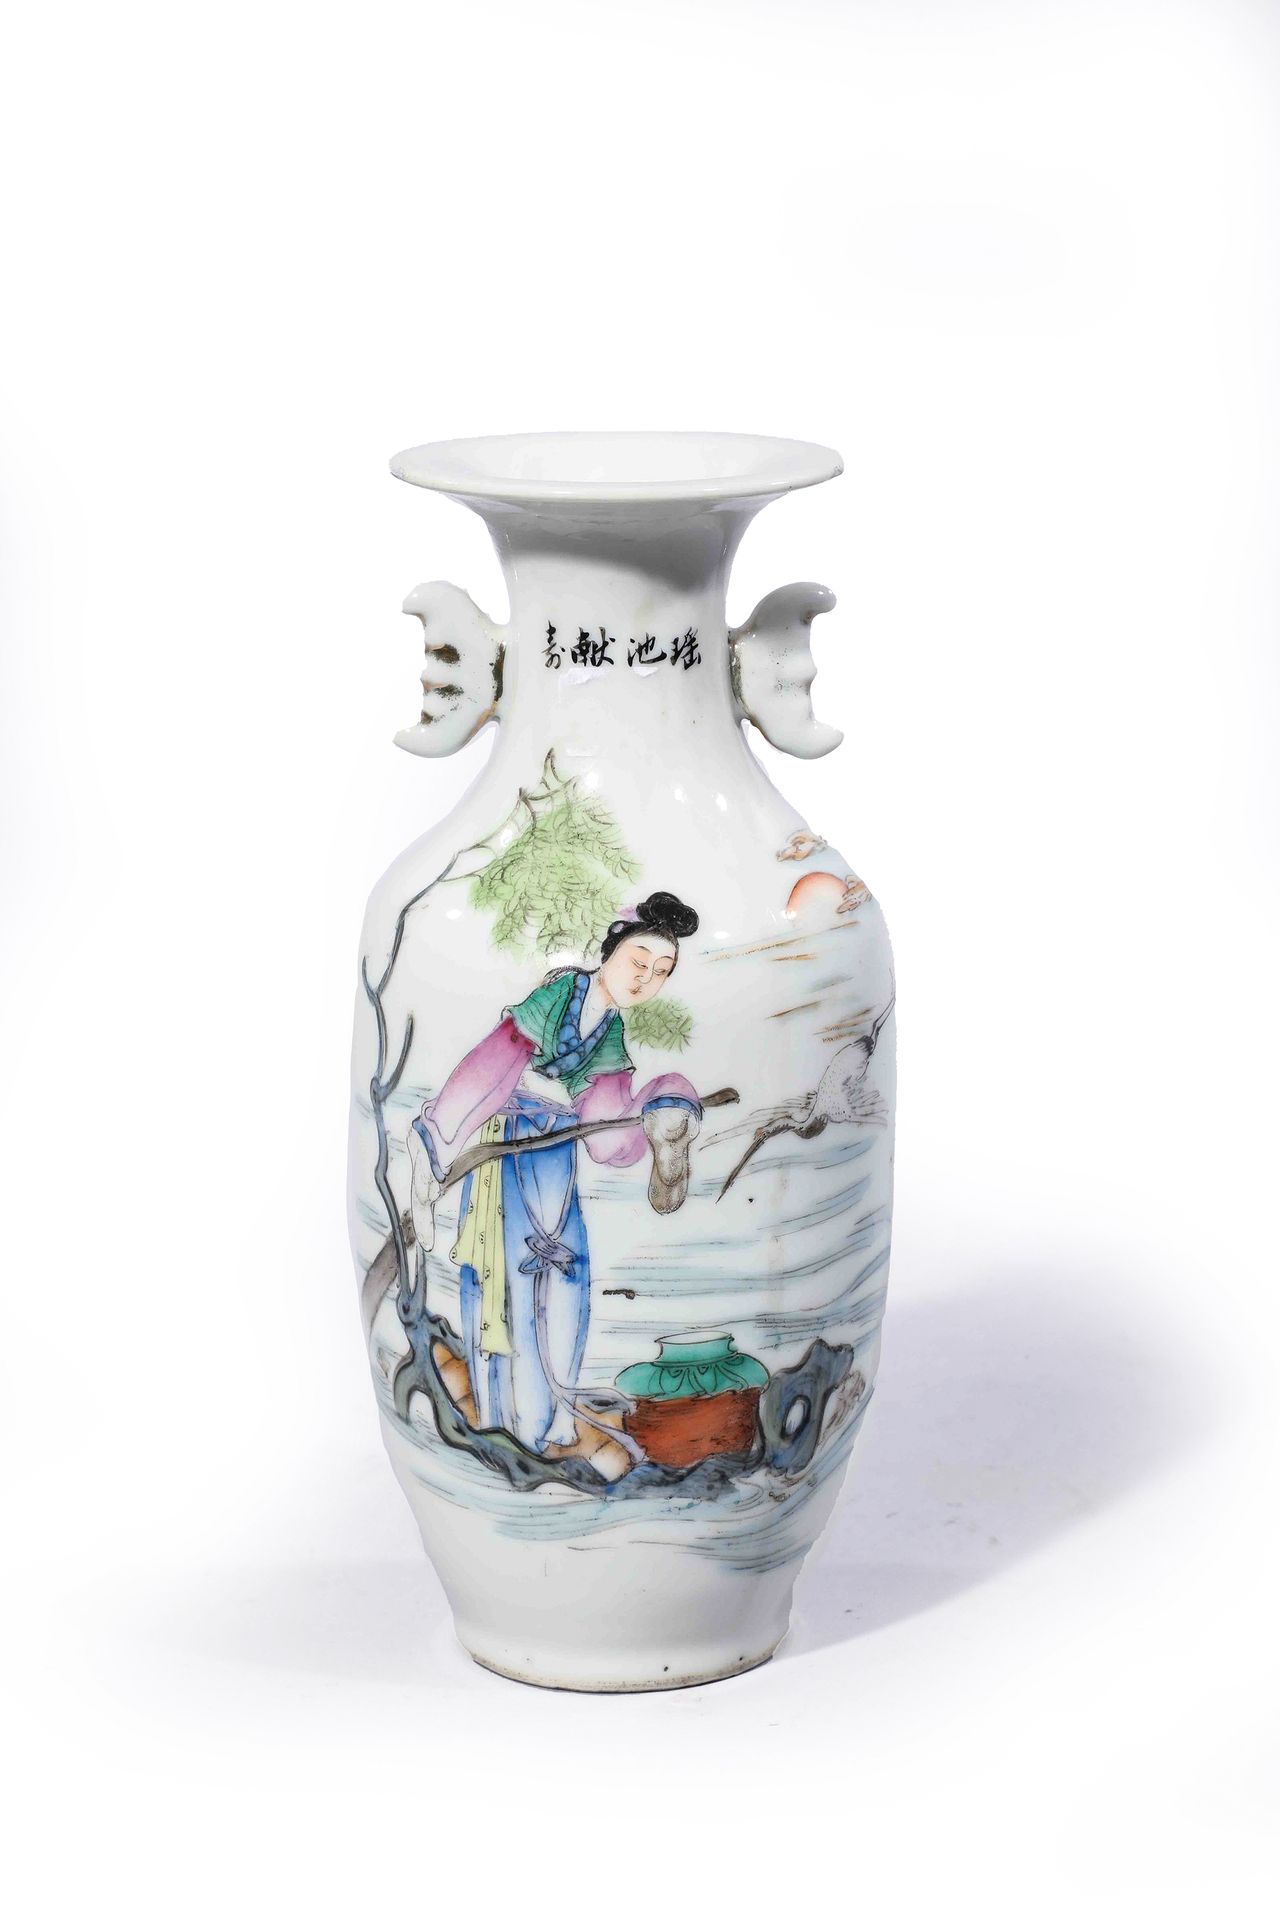 Null 
Vaso di porcellana decorato con

di personaggi.

Cina 20° secolo

H. 23 cm